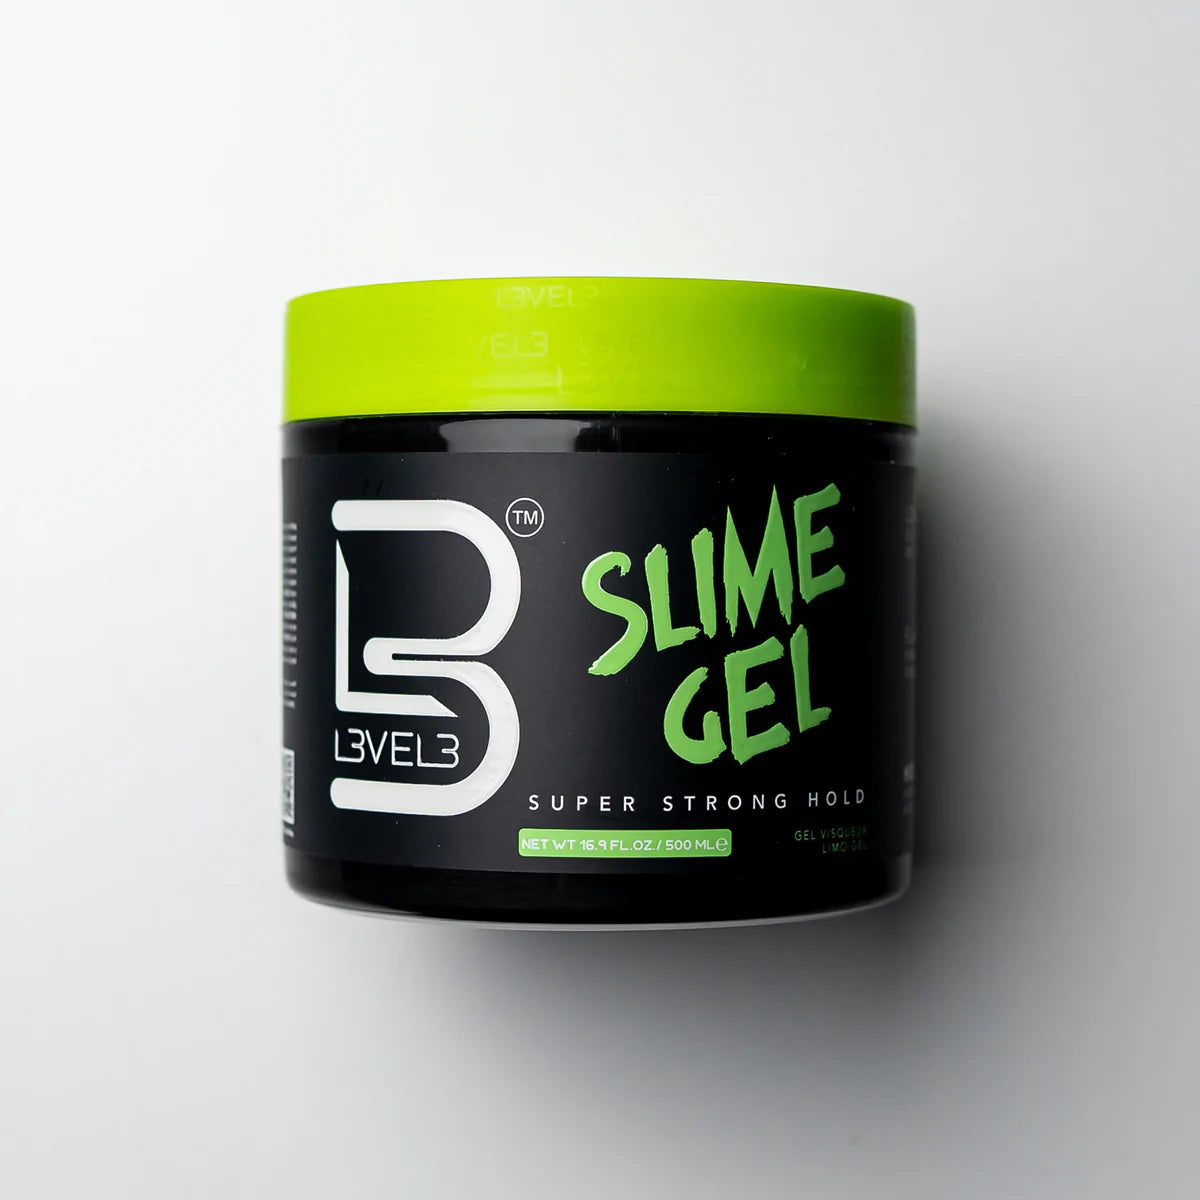 LV3 Slime Gel